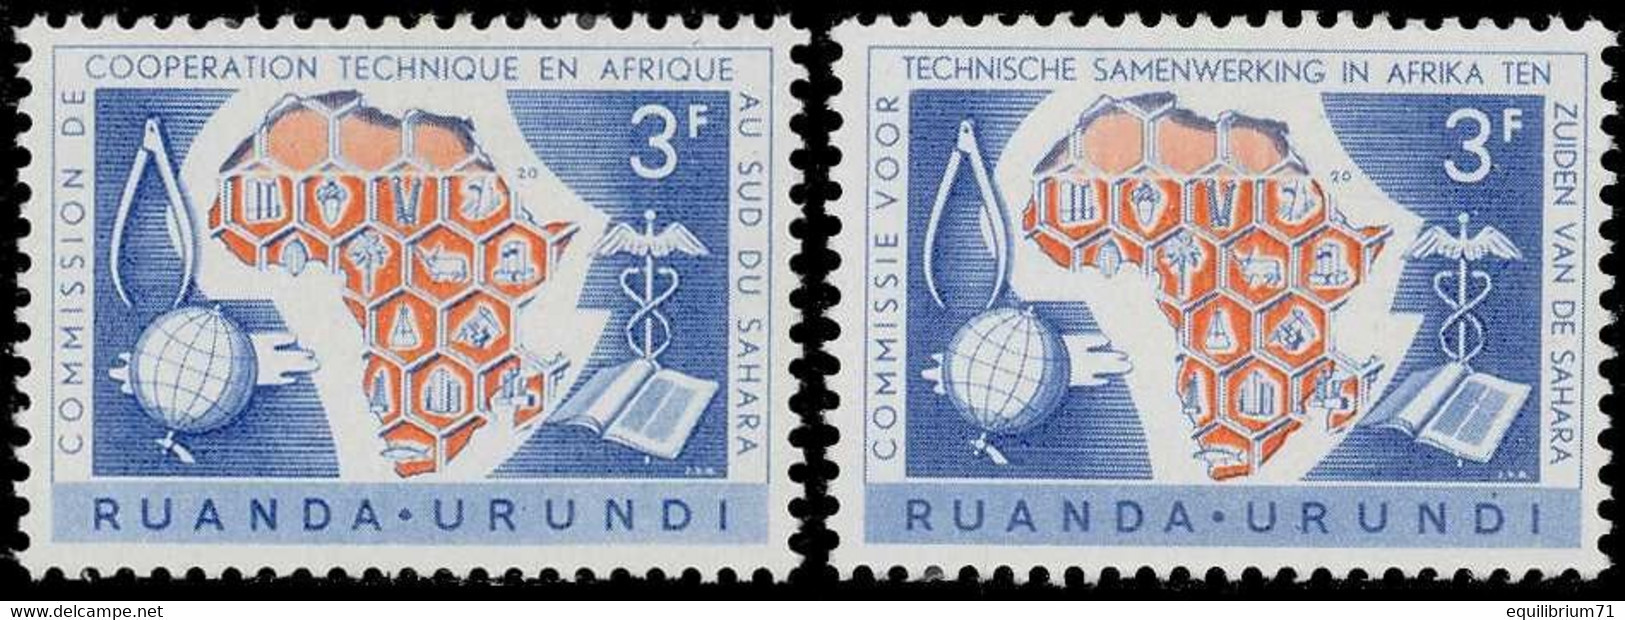 217/218** - 10e Anniversaire De La Commission De Coopération Technique En Afrique - RUANDA URUNDI - Unused Stamps